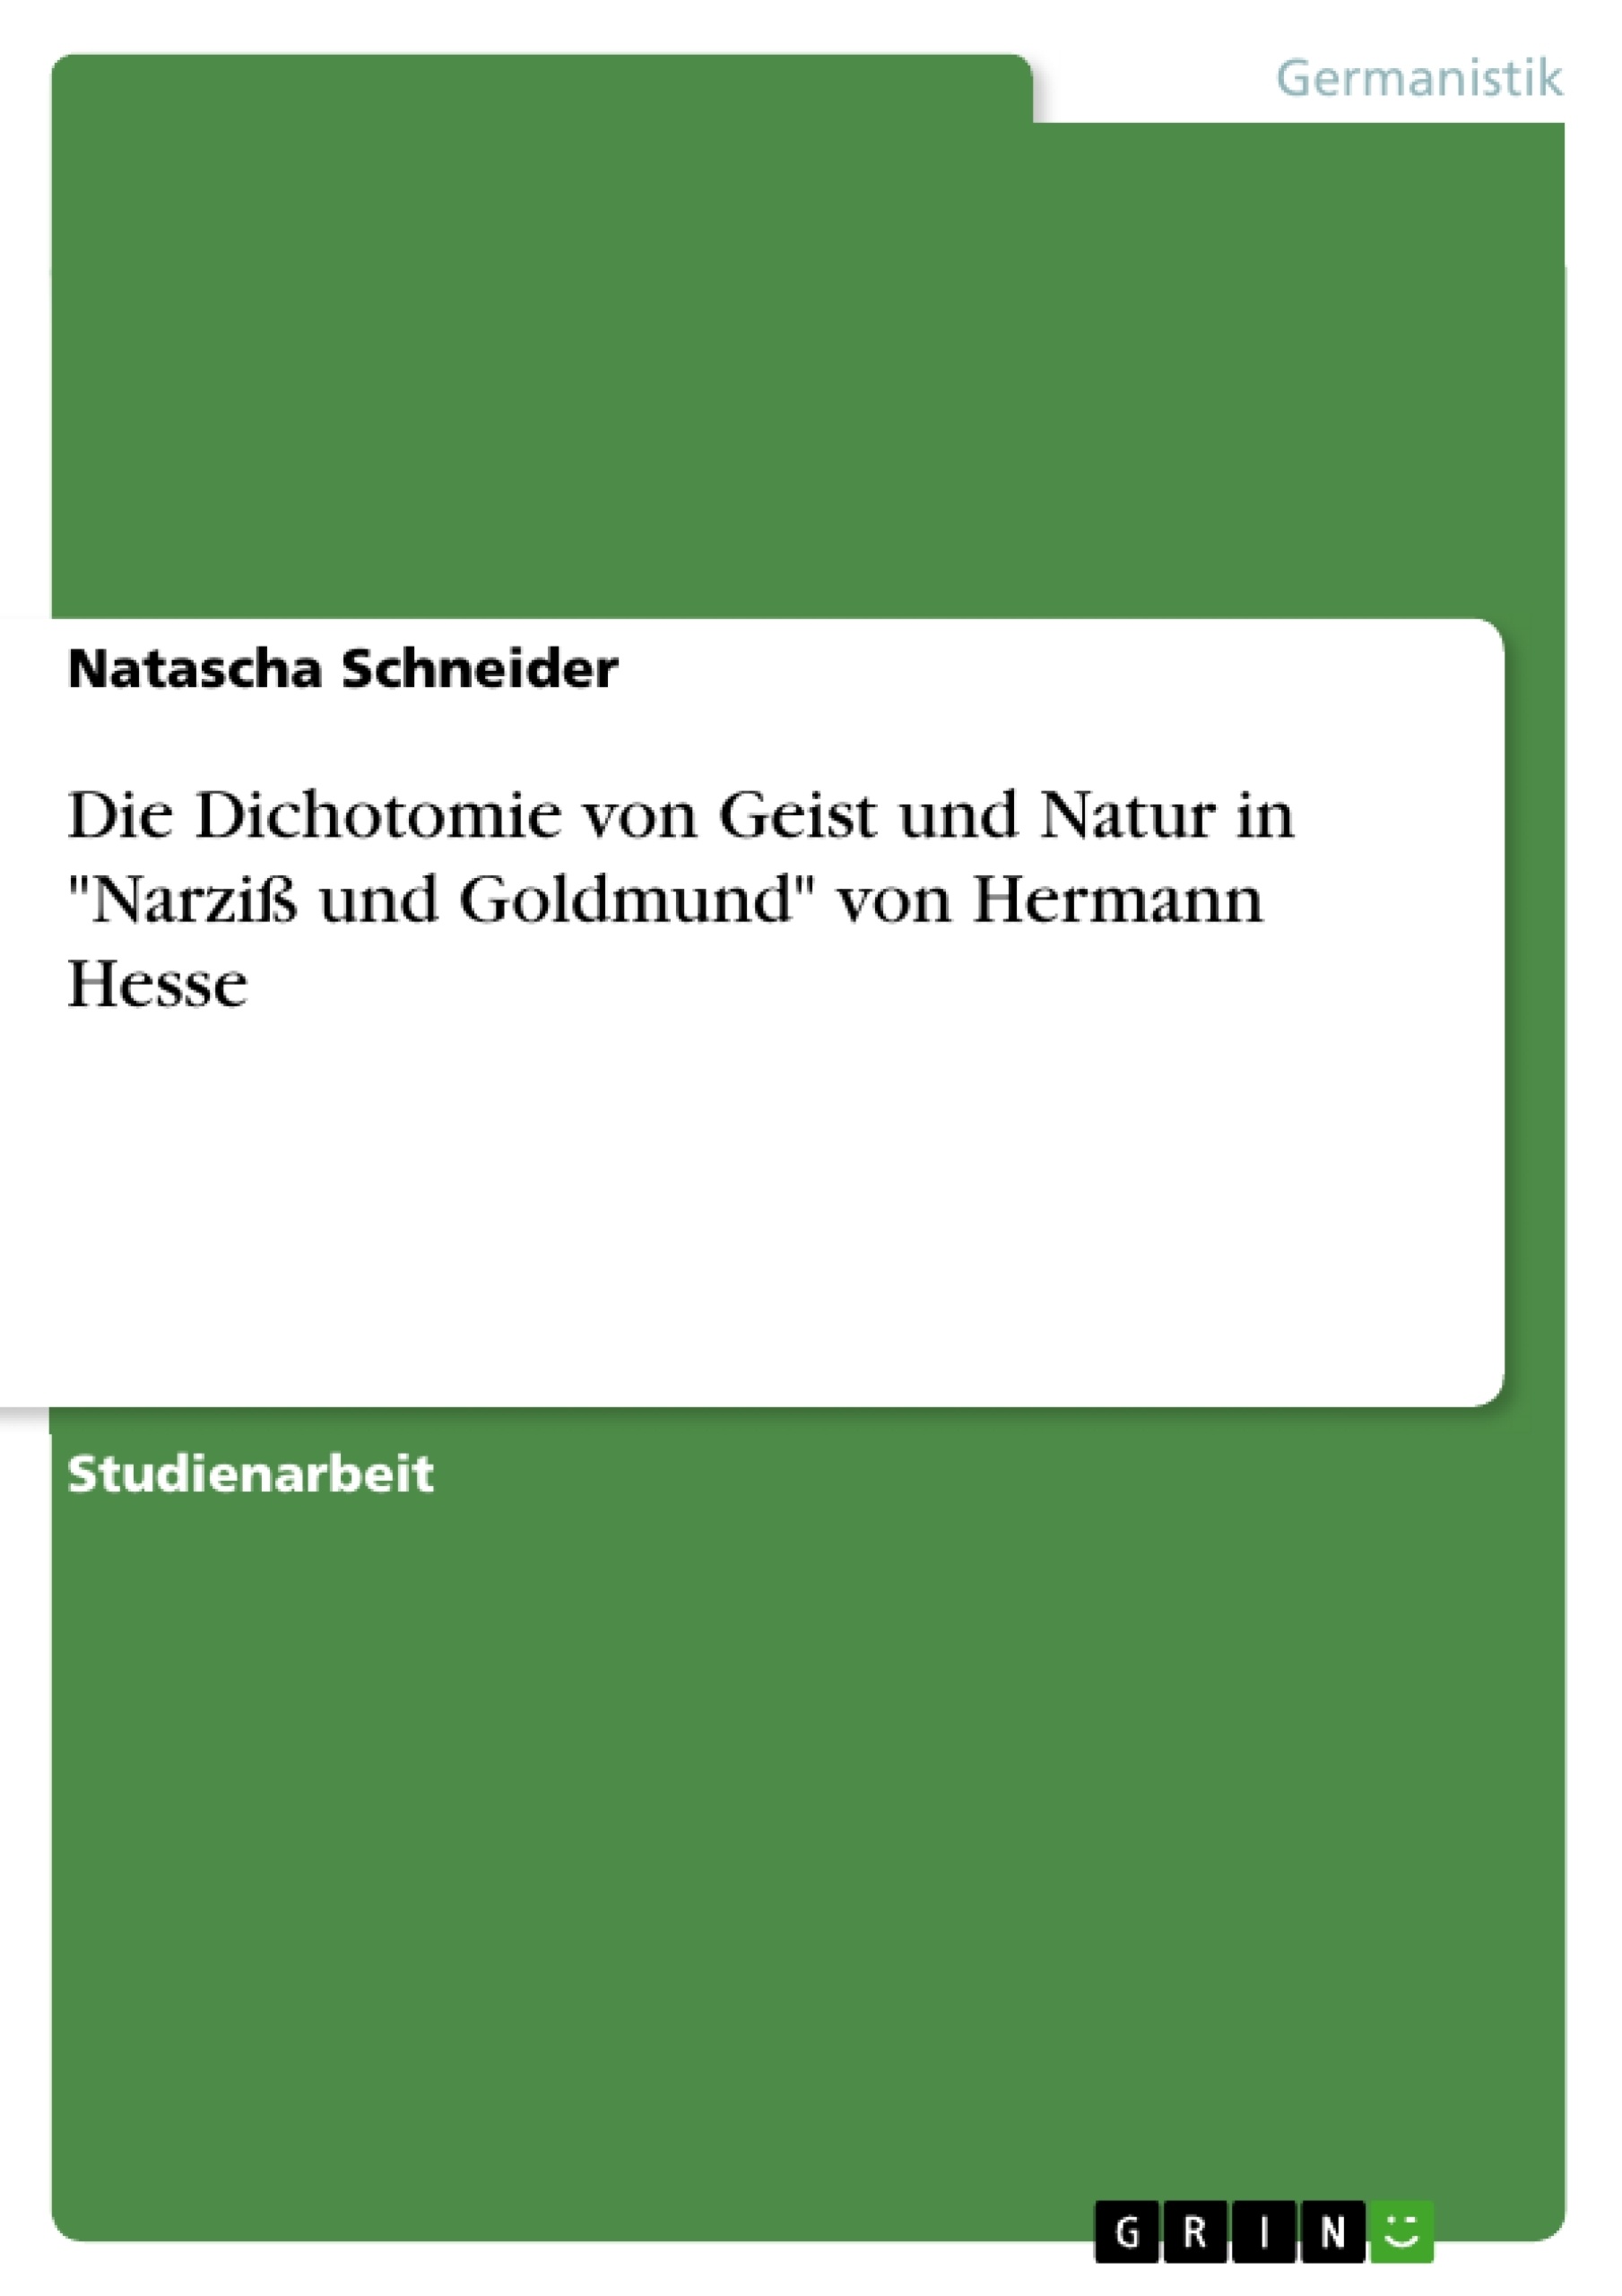 Title: Die Dichotomie von Geist und Natur in "Narziß und Goldmund" von Hermann Hesse